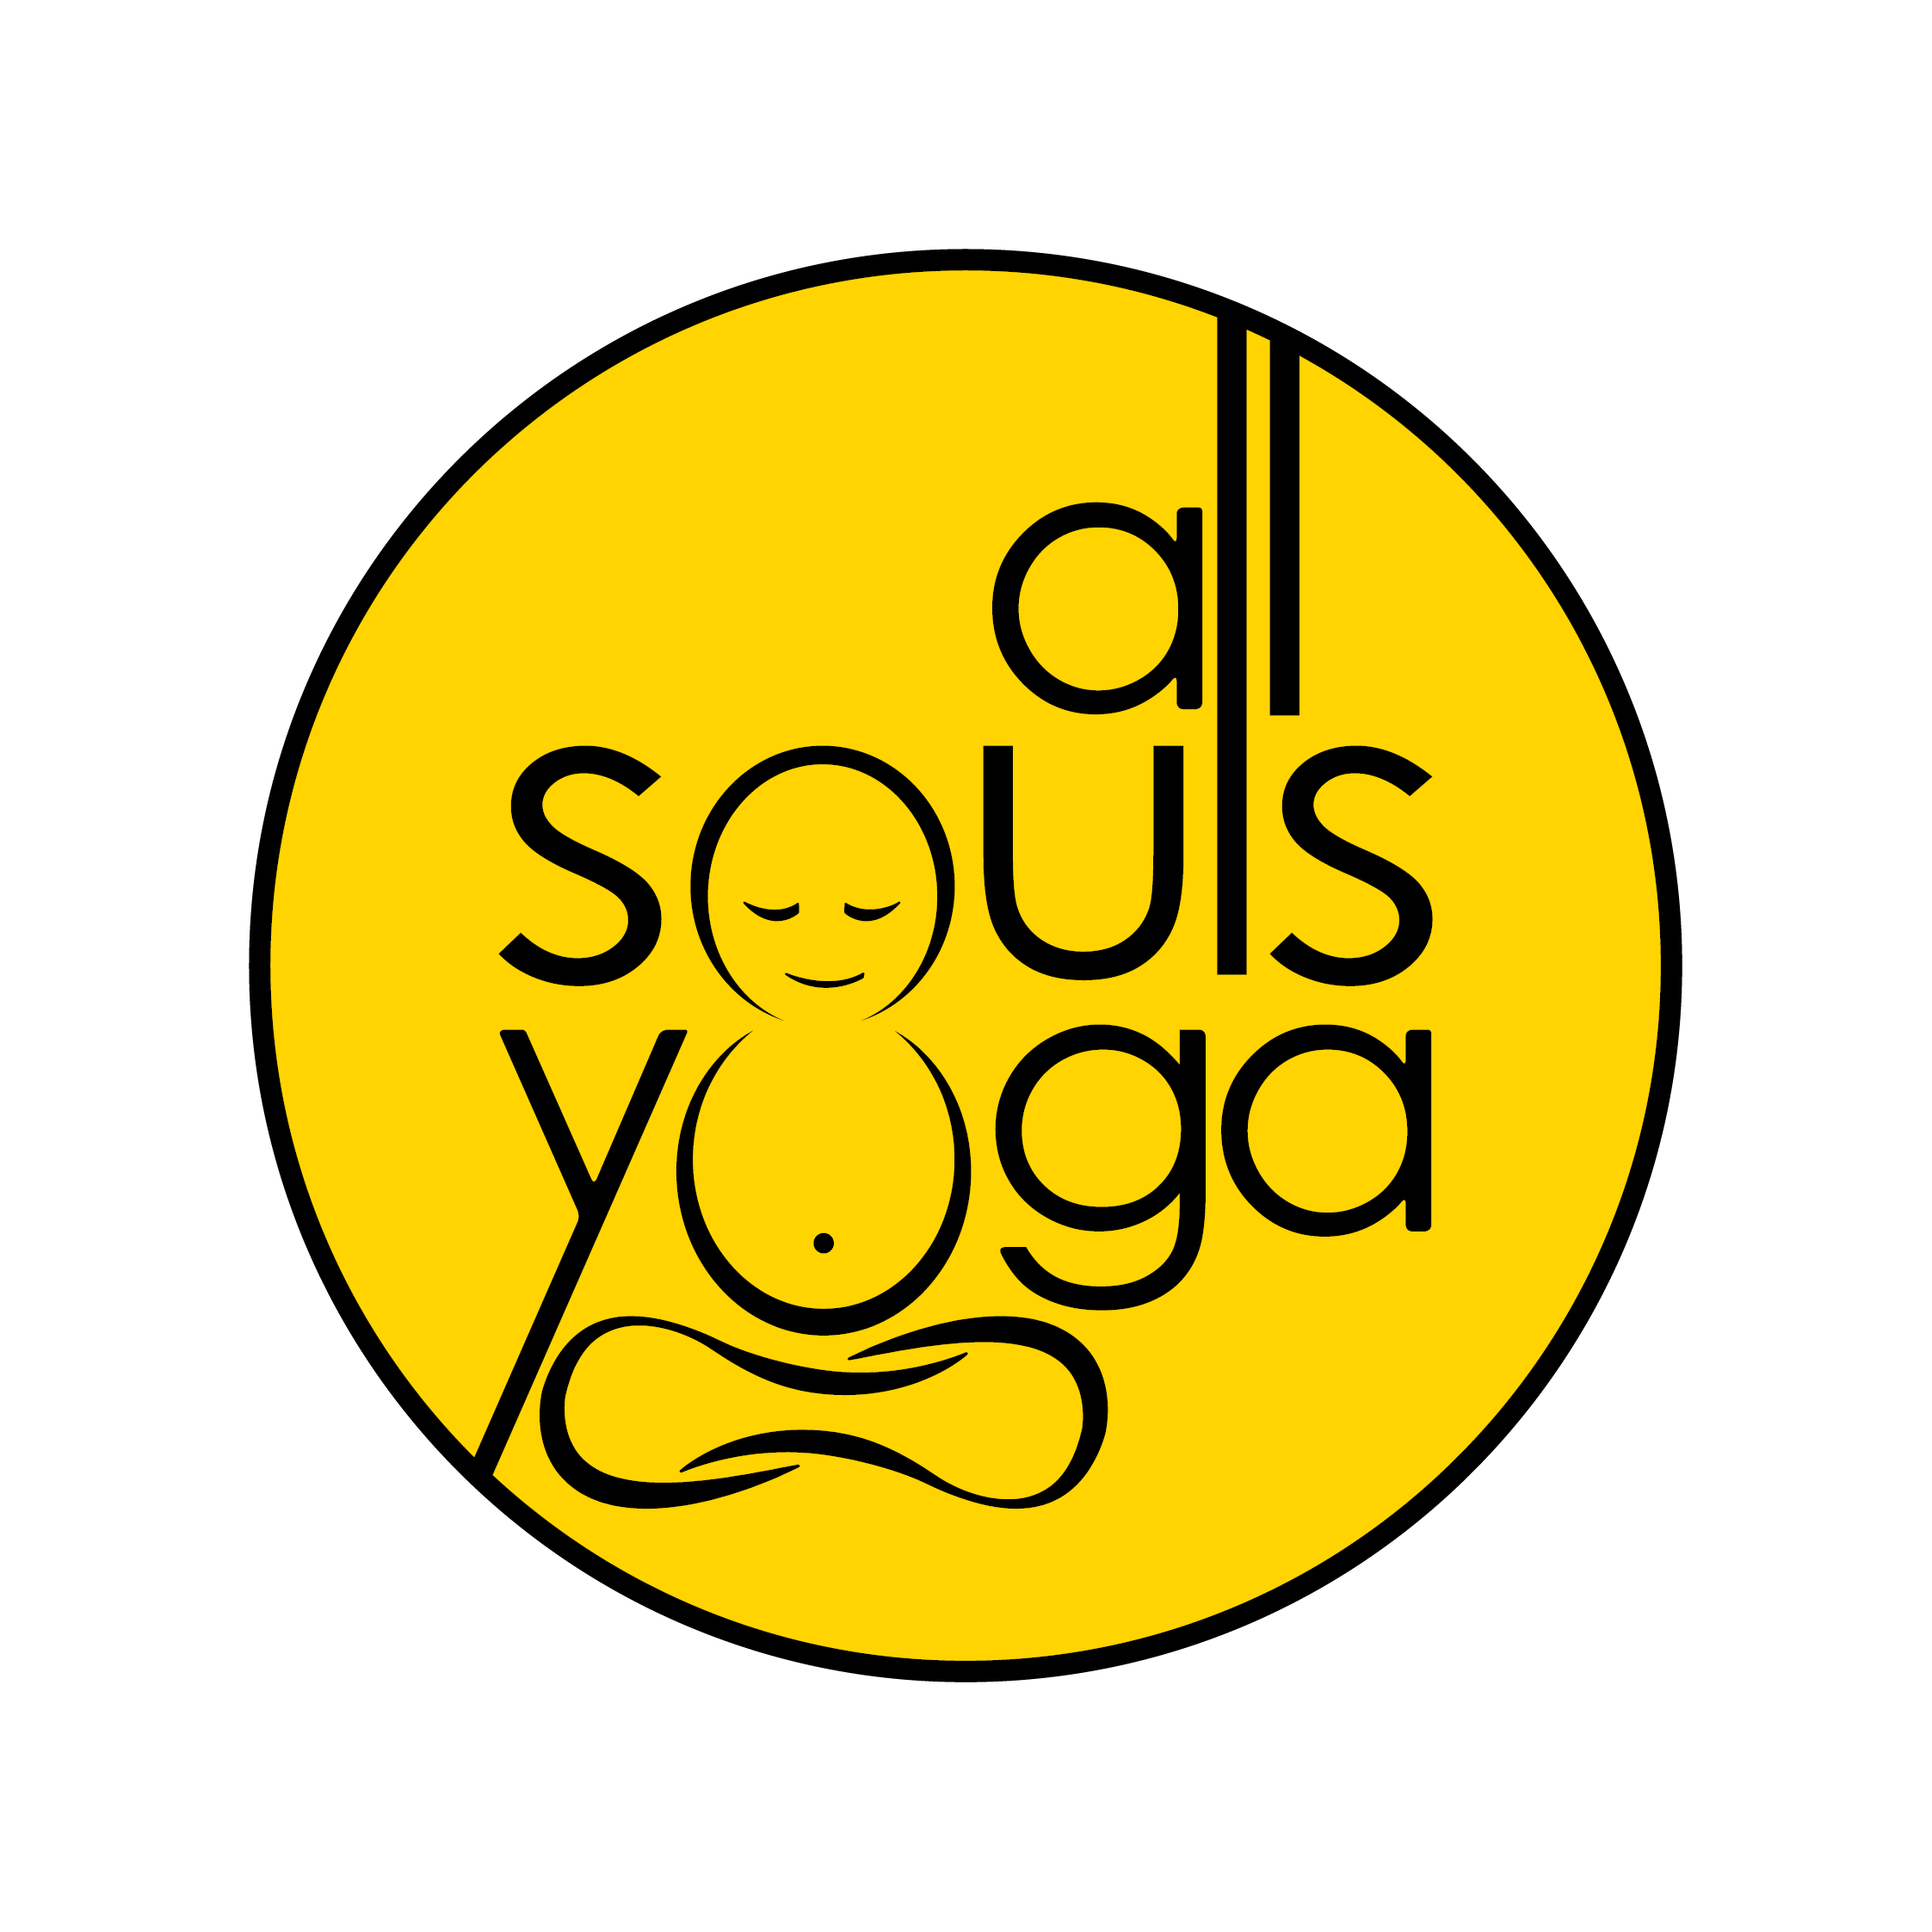 All Souls Yoga